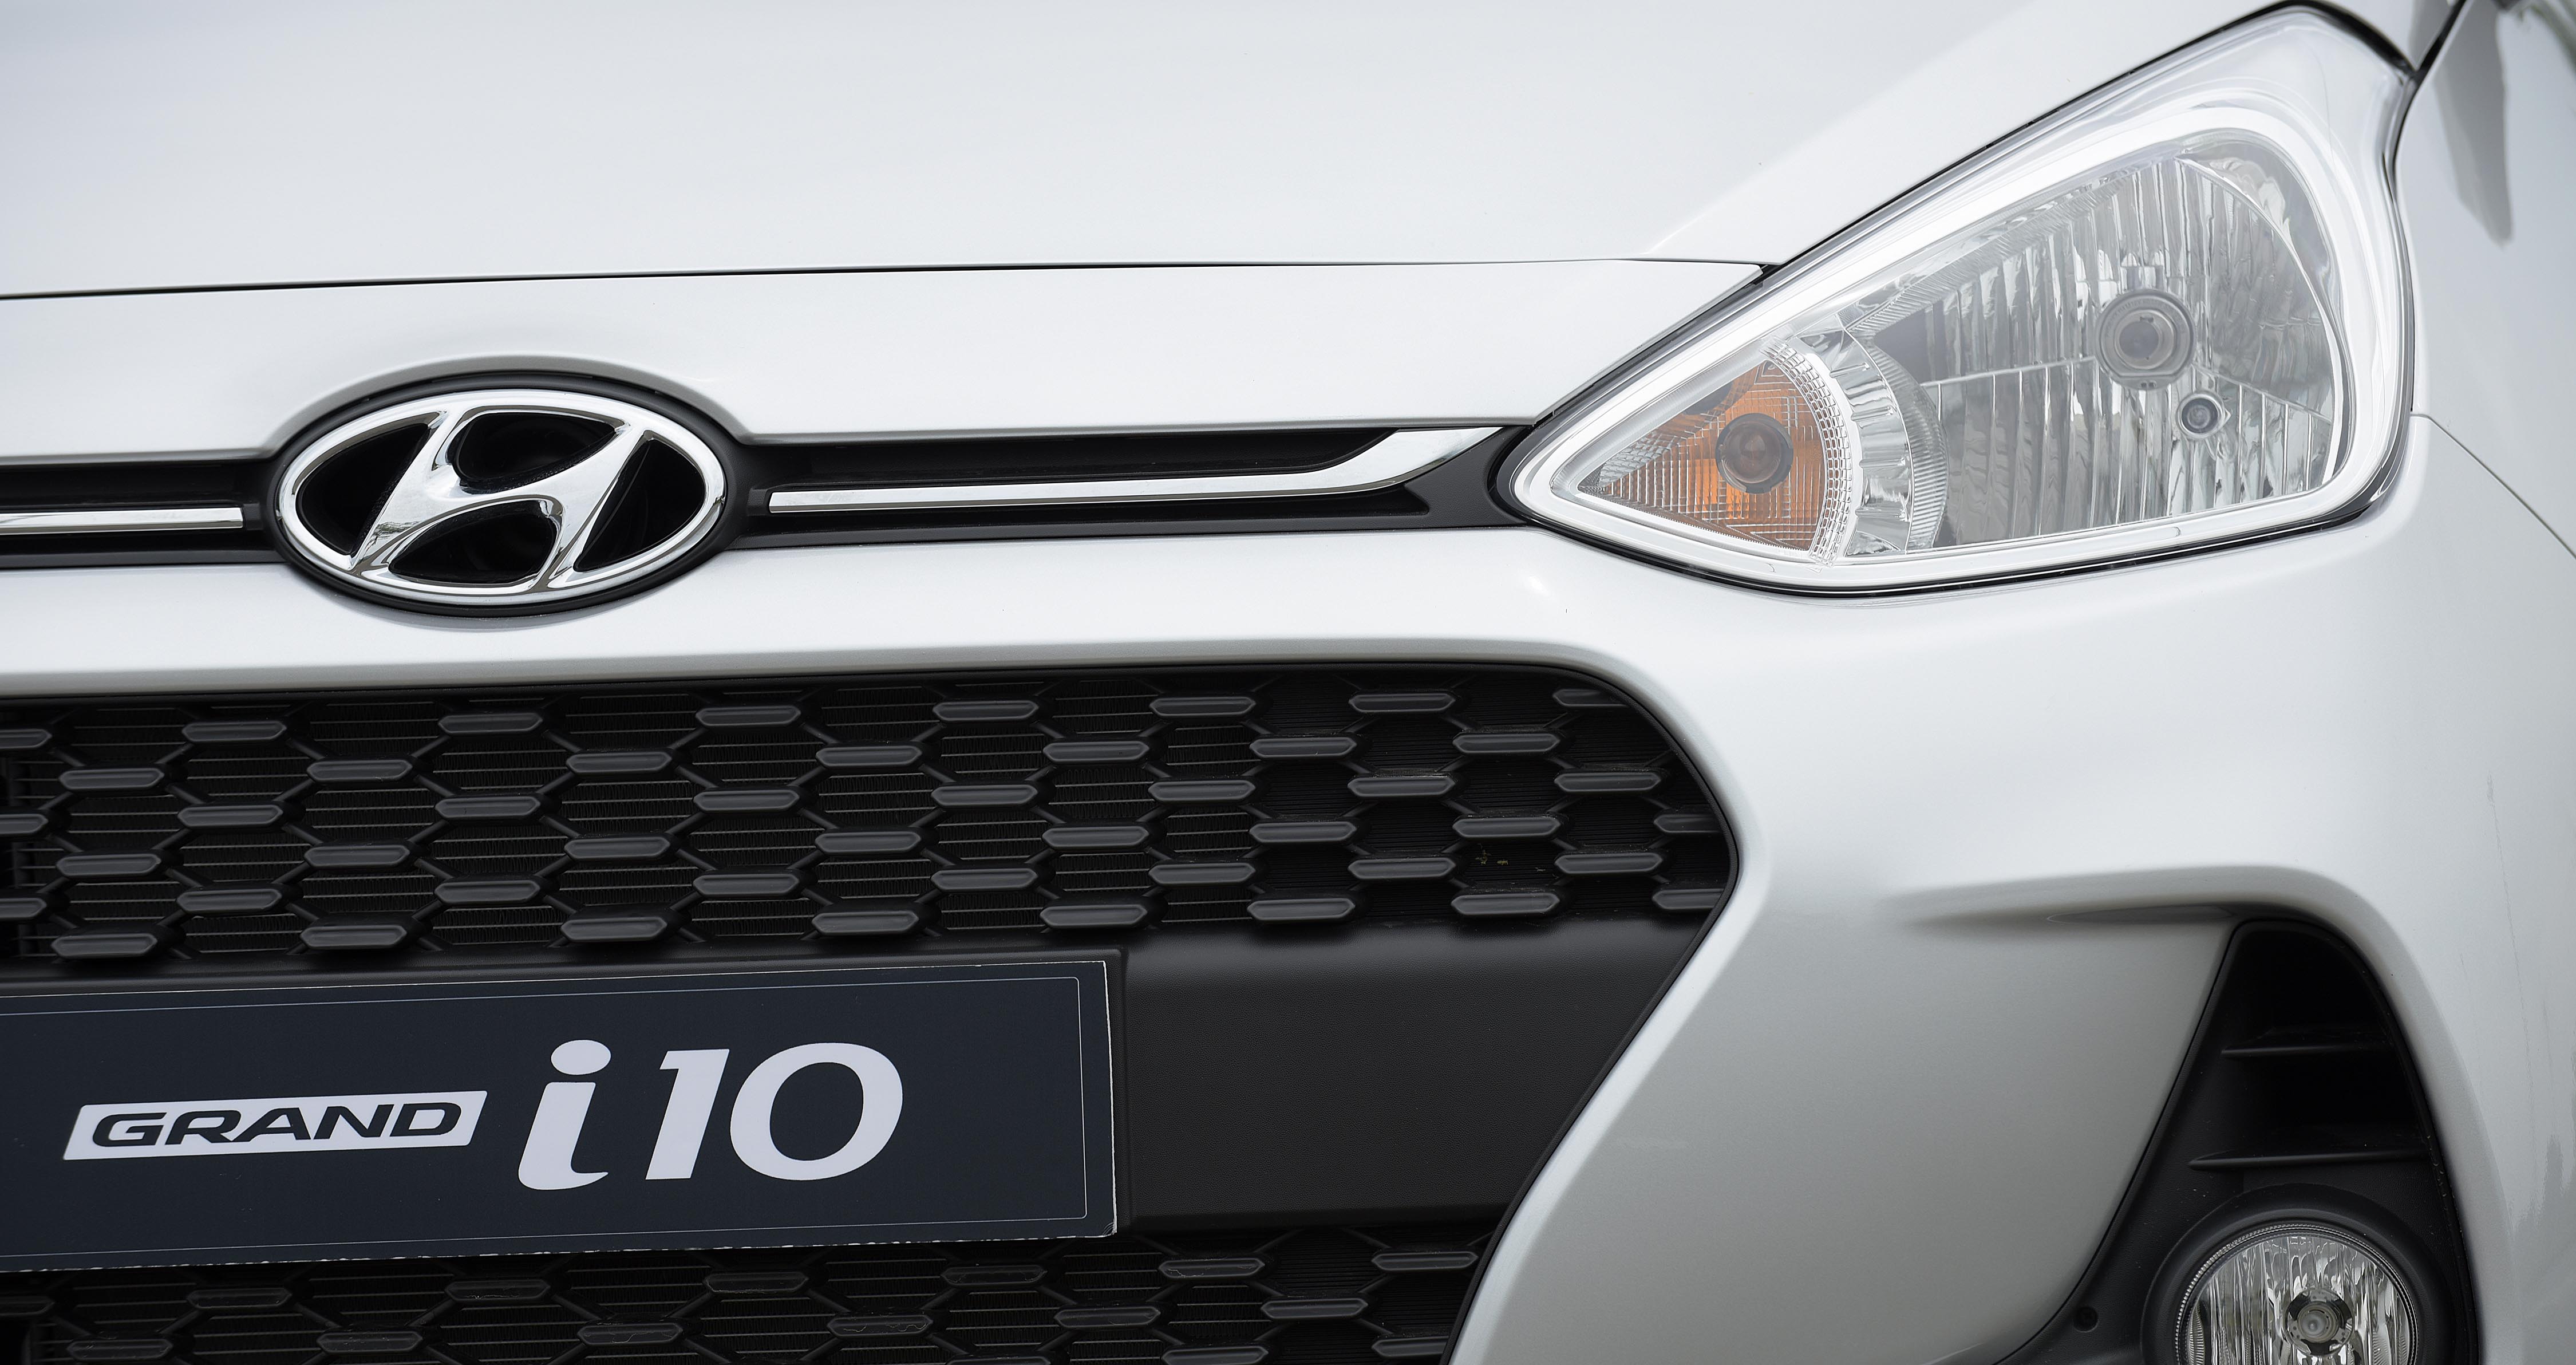 Bạn chọn Hyundai Grand i10 Sedan 2017 bởi vì sao